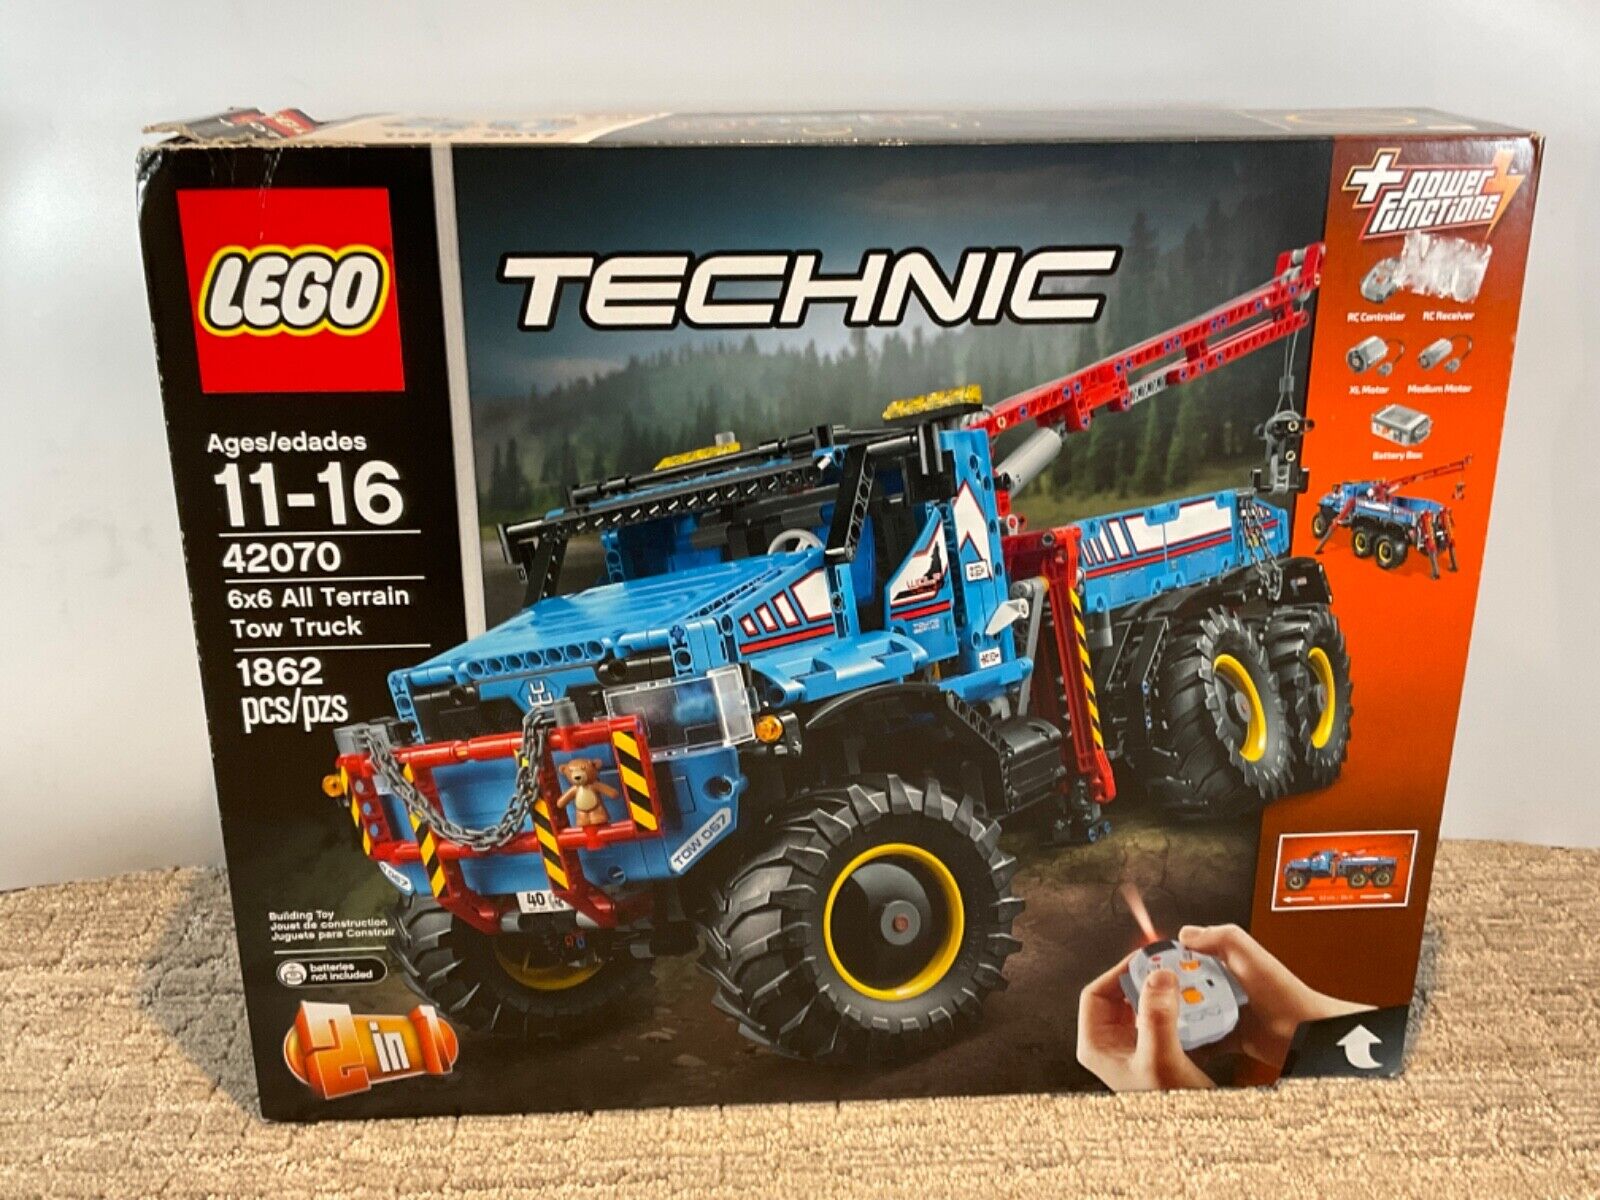 tidligere tusind Arbejdsgiver LEGO 42070 Technic 6x6 All Terrain Tow Truck Brand New Sealed (L225)  5702015869768 | eBay